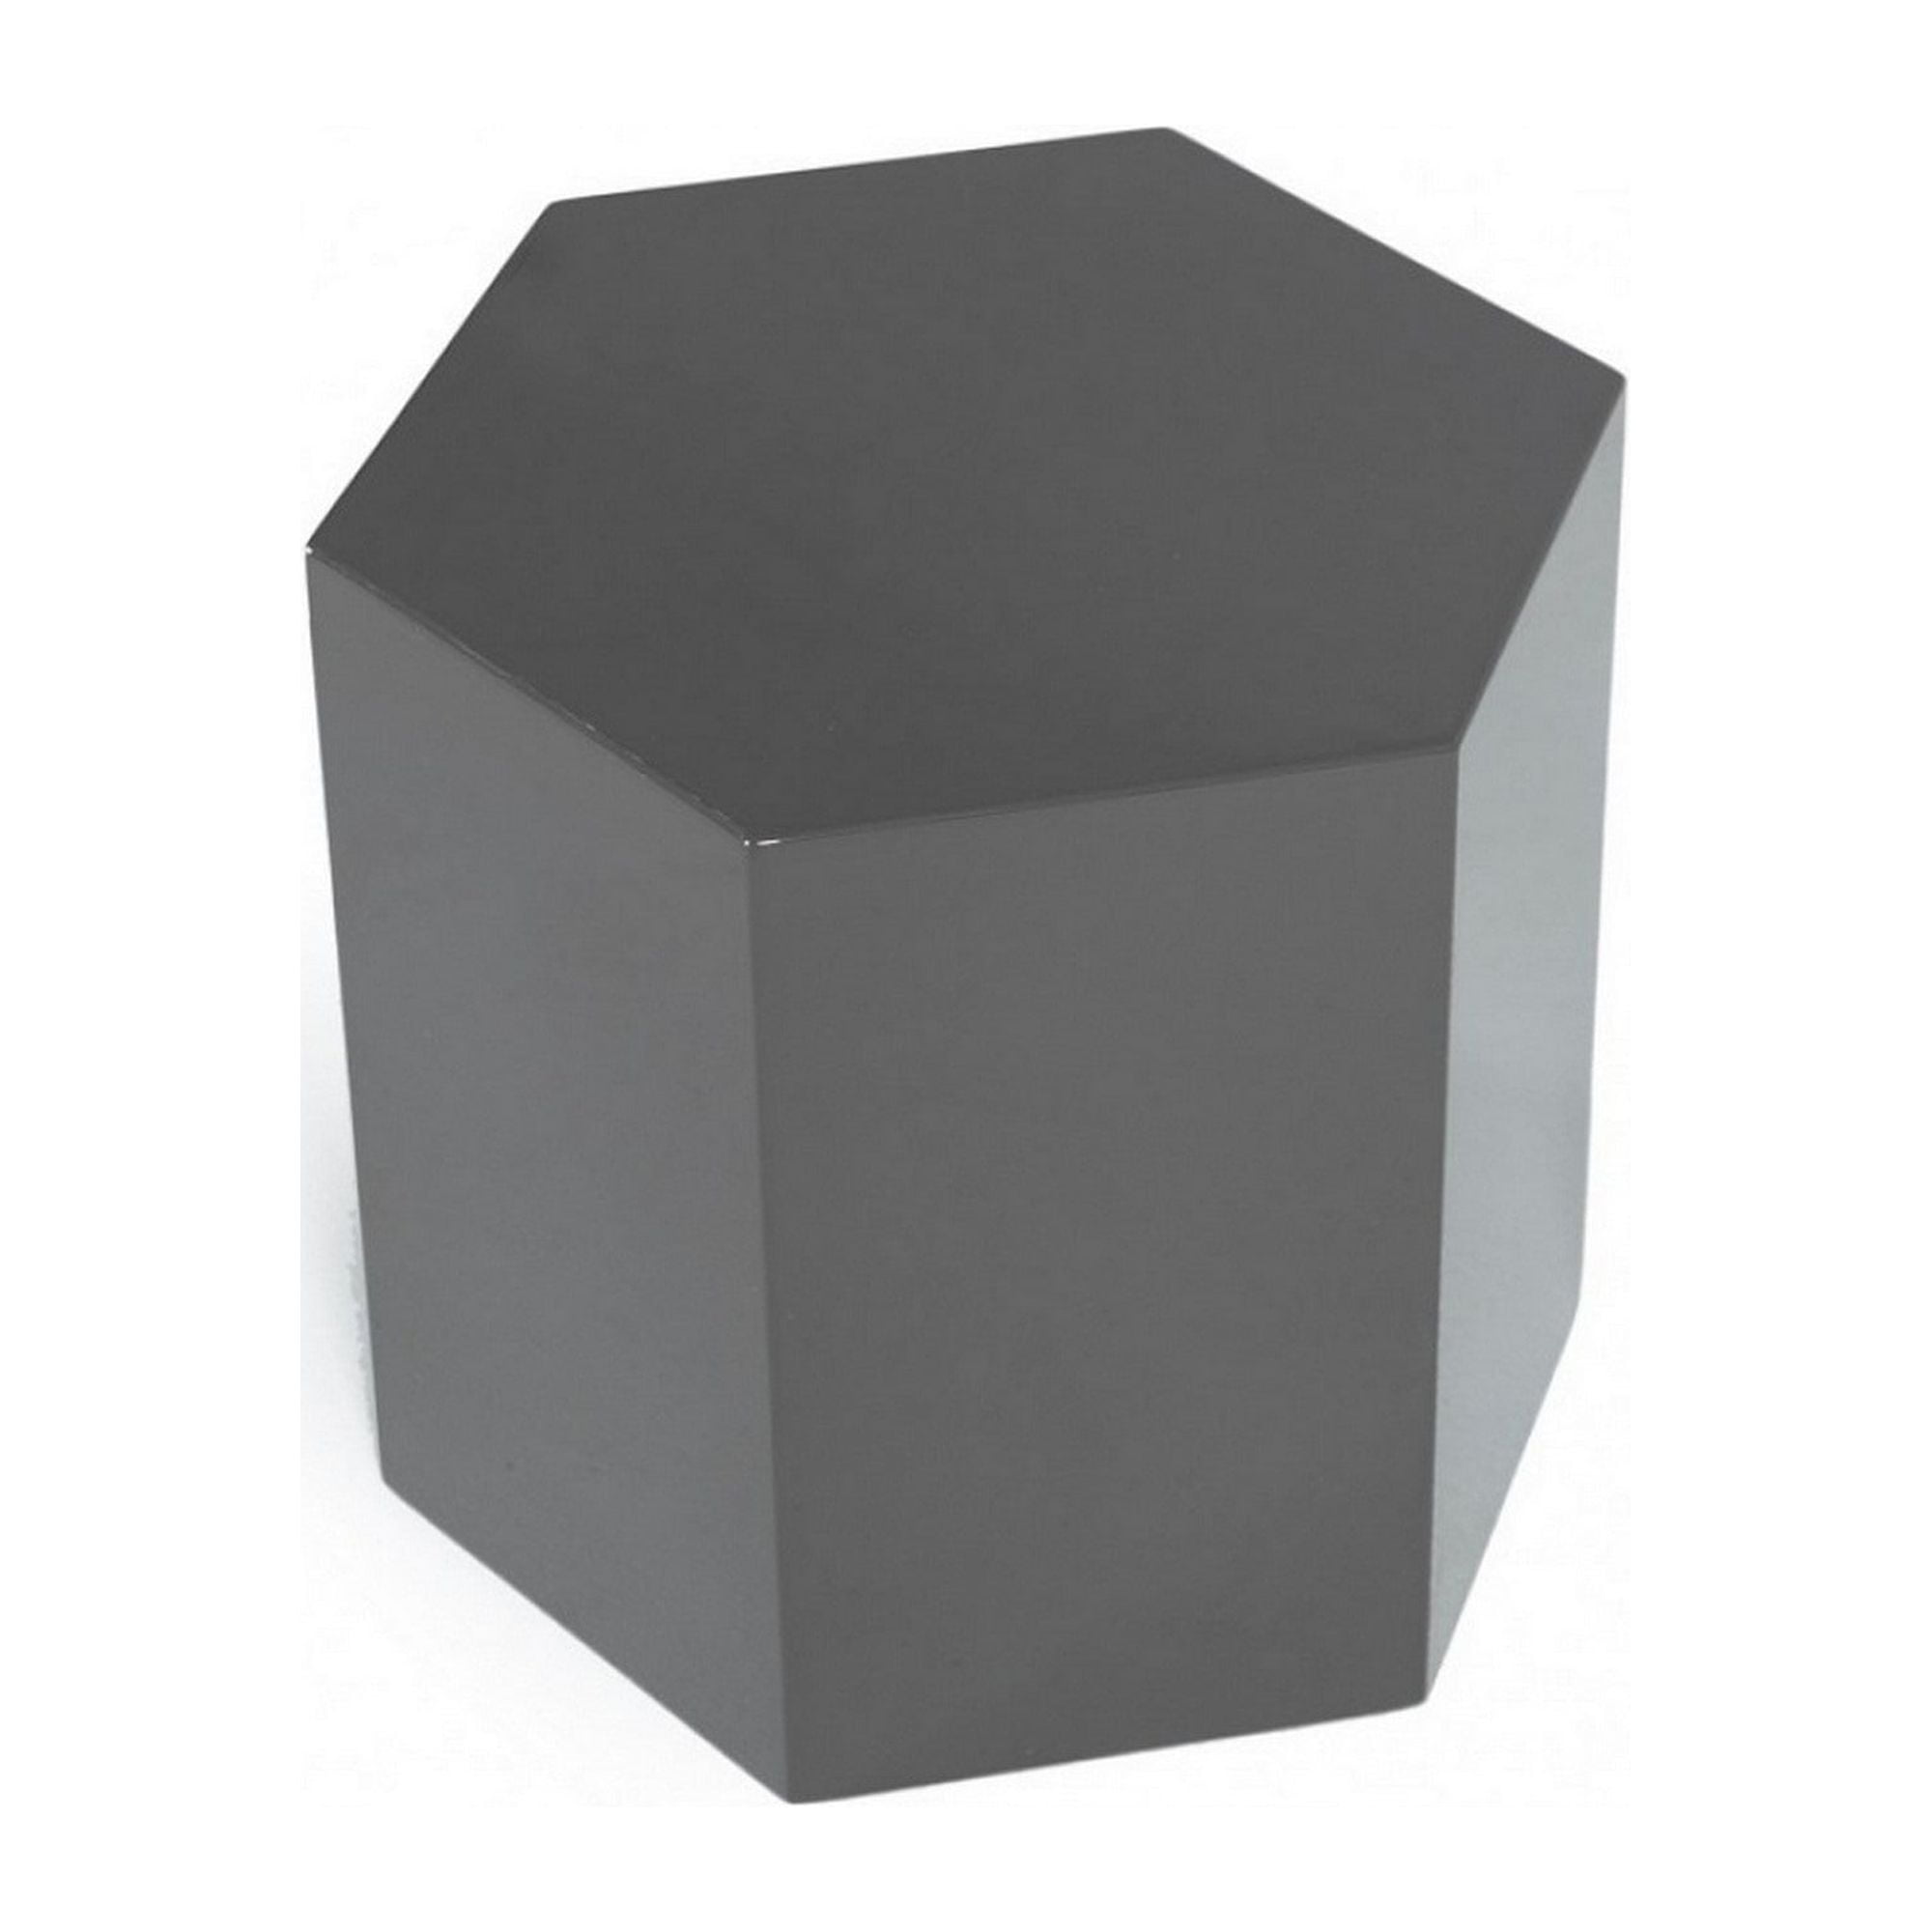 Picture of Benzara BM223418 Contemporary High Gloss Hexagonal Wooden End Table  Medium  Gray - 13 x 15 x  18.9